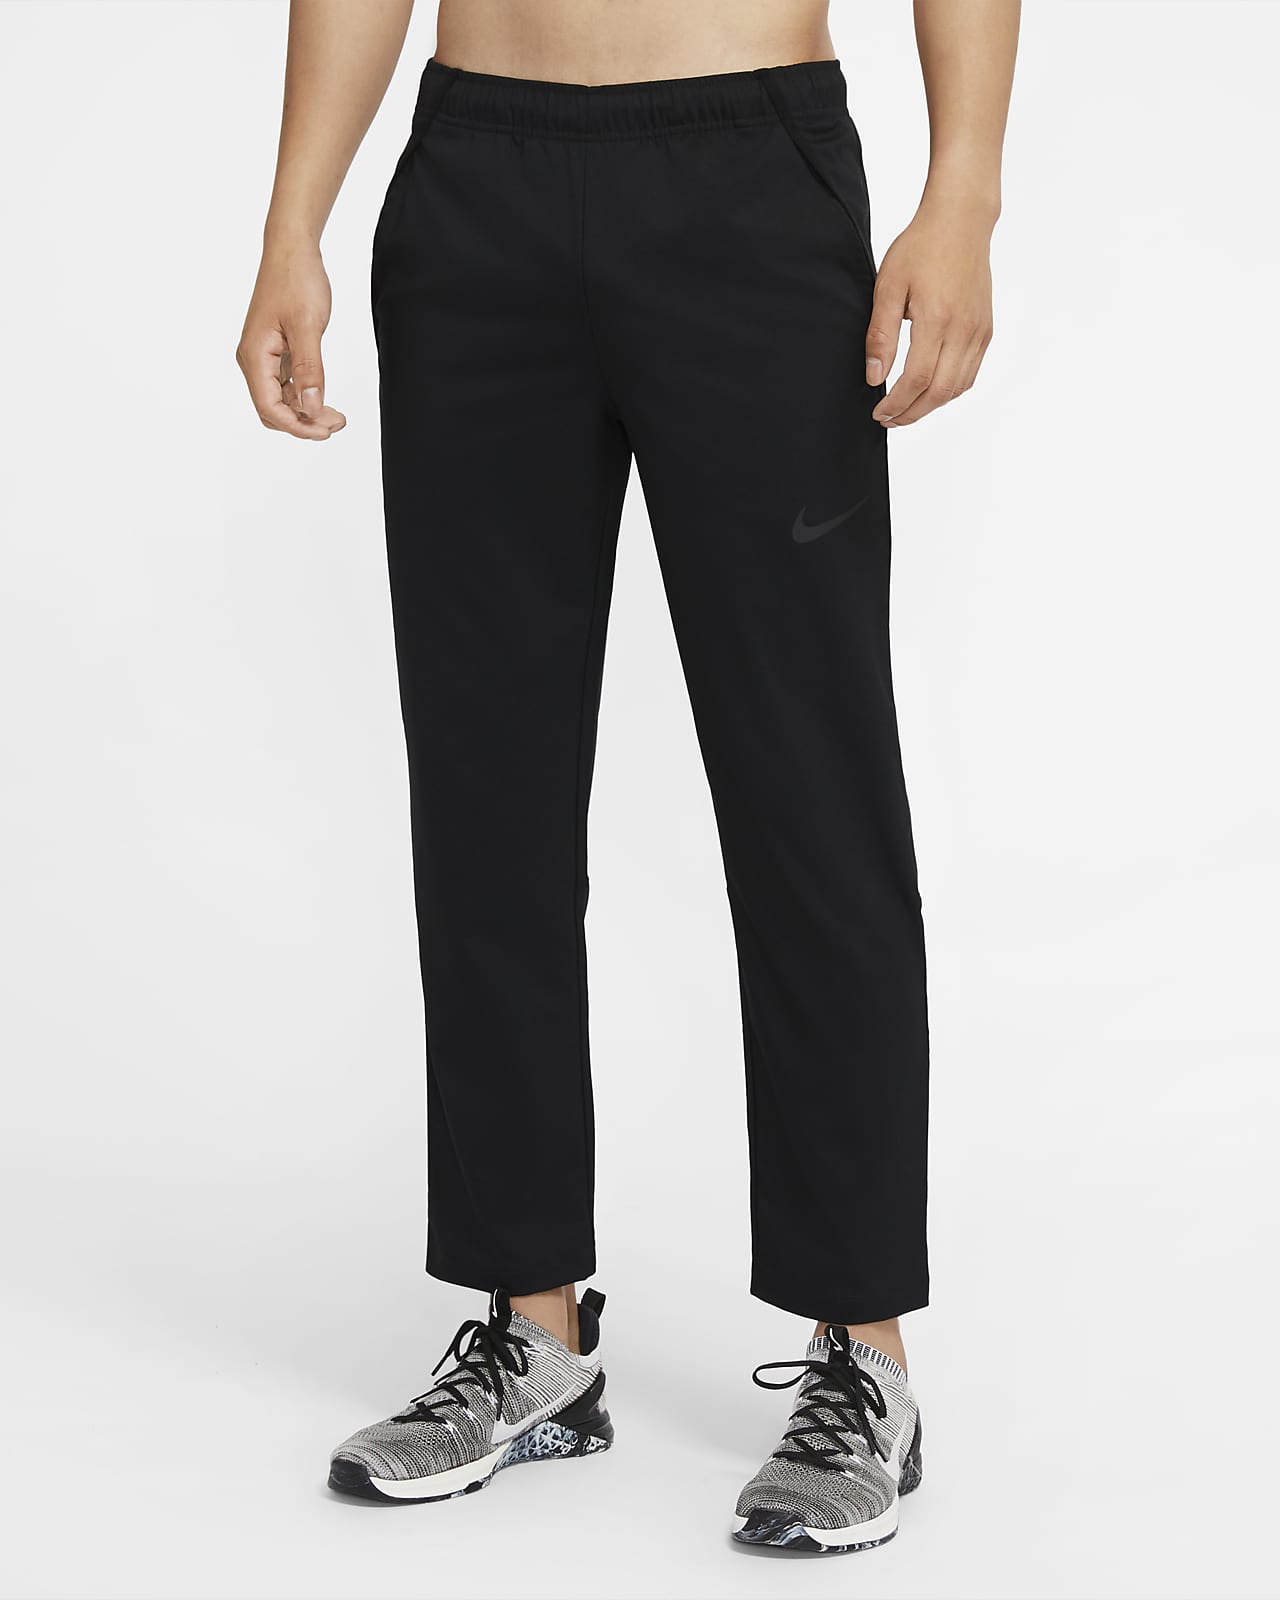 Ανδρικό υφαντό παντελόνι προπόνησης Nike Dri-FIT